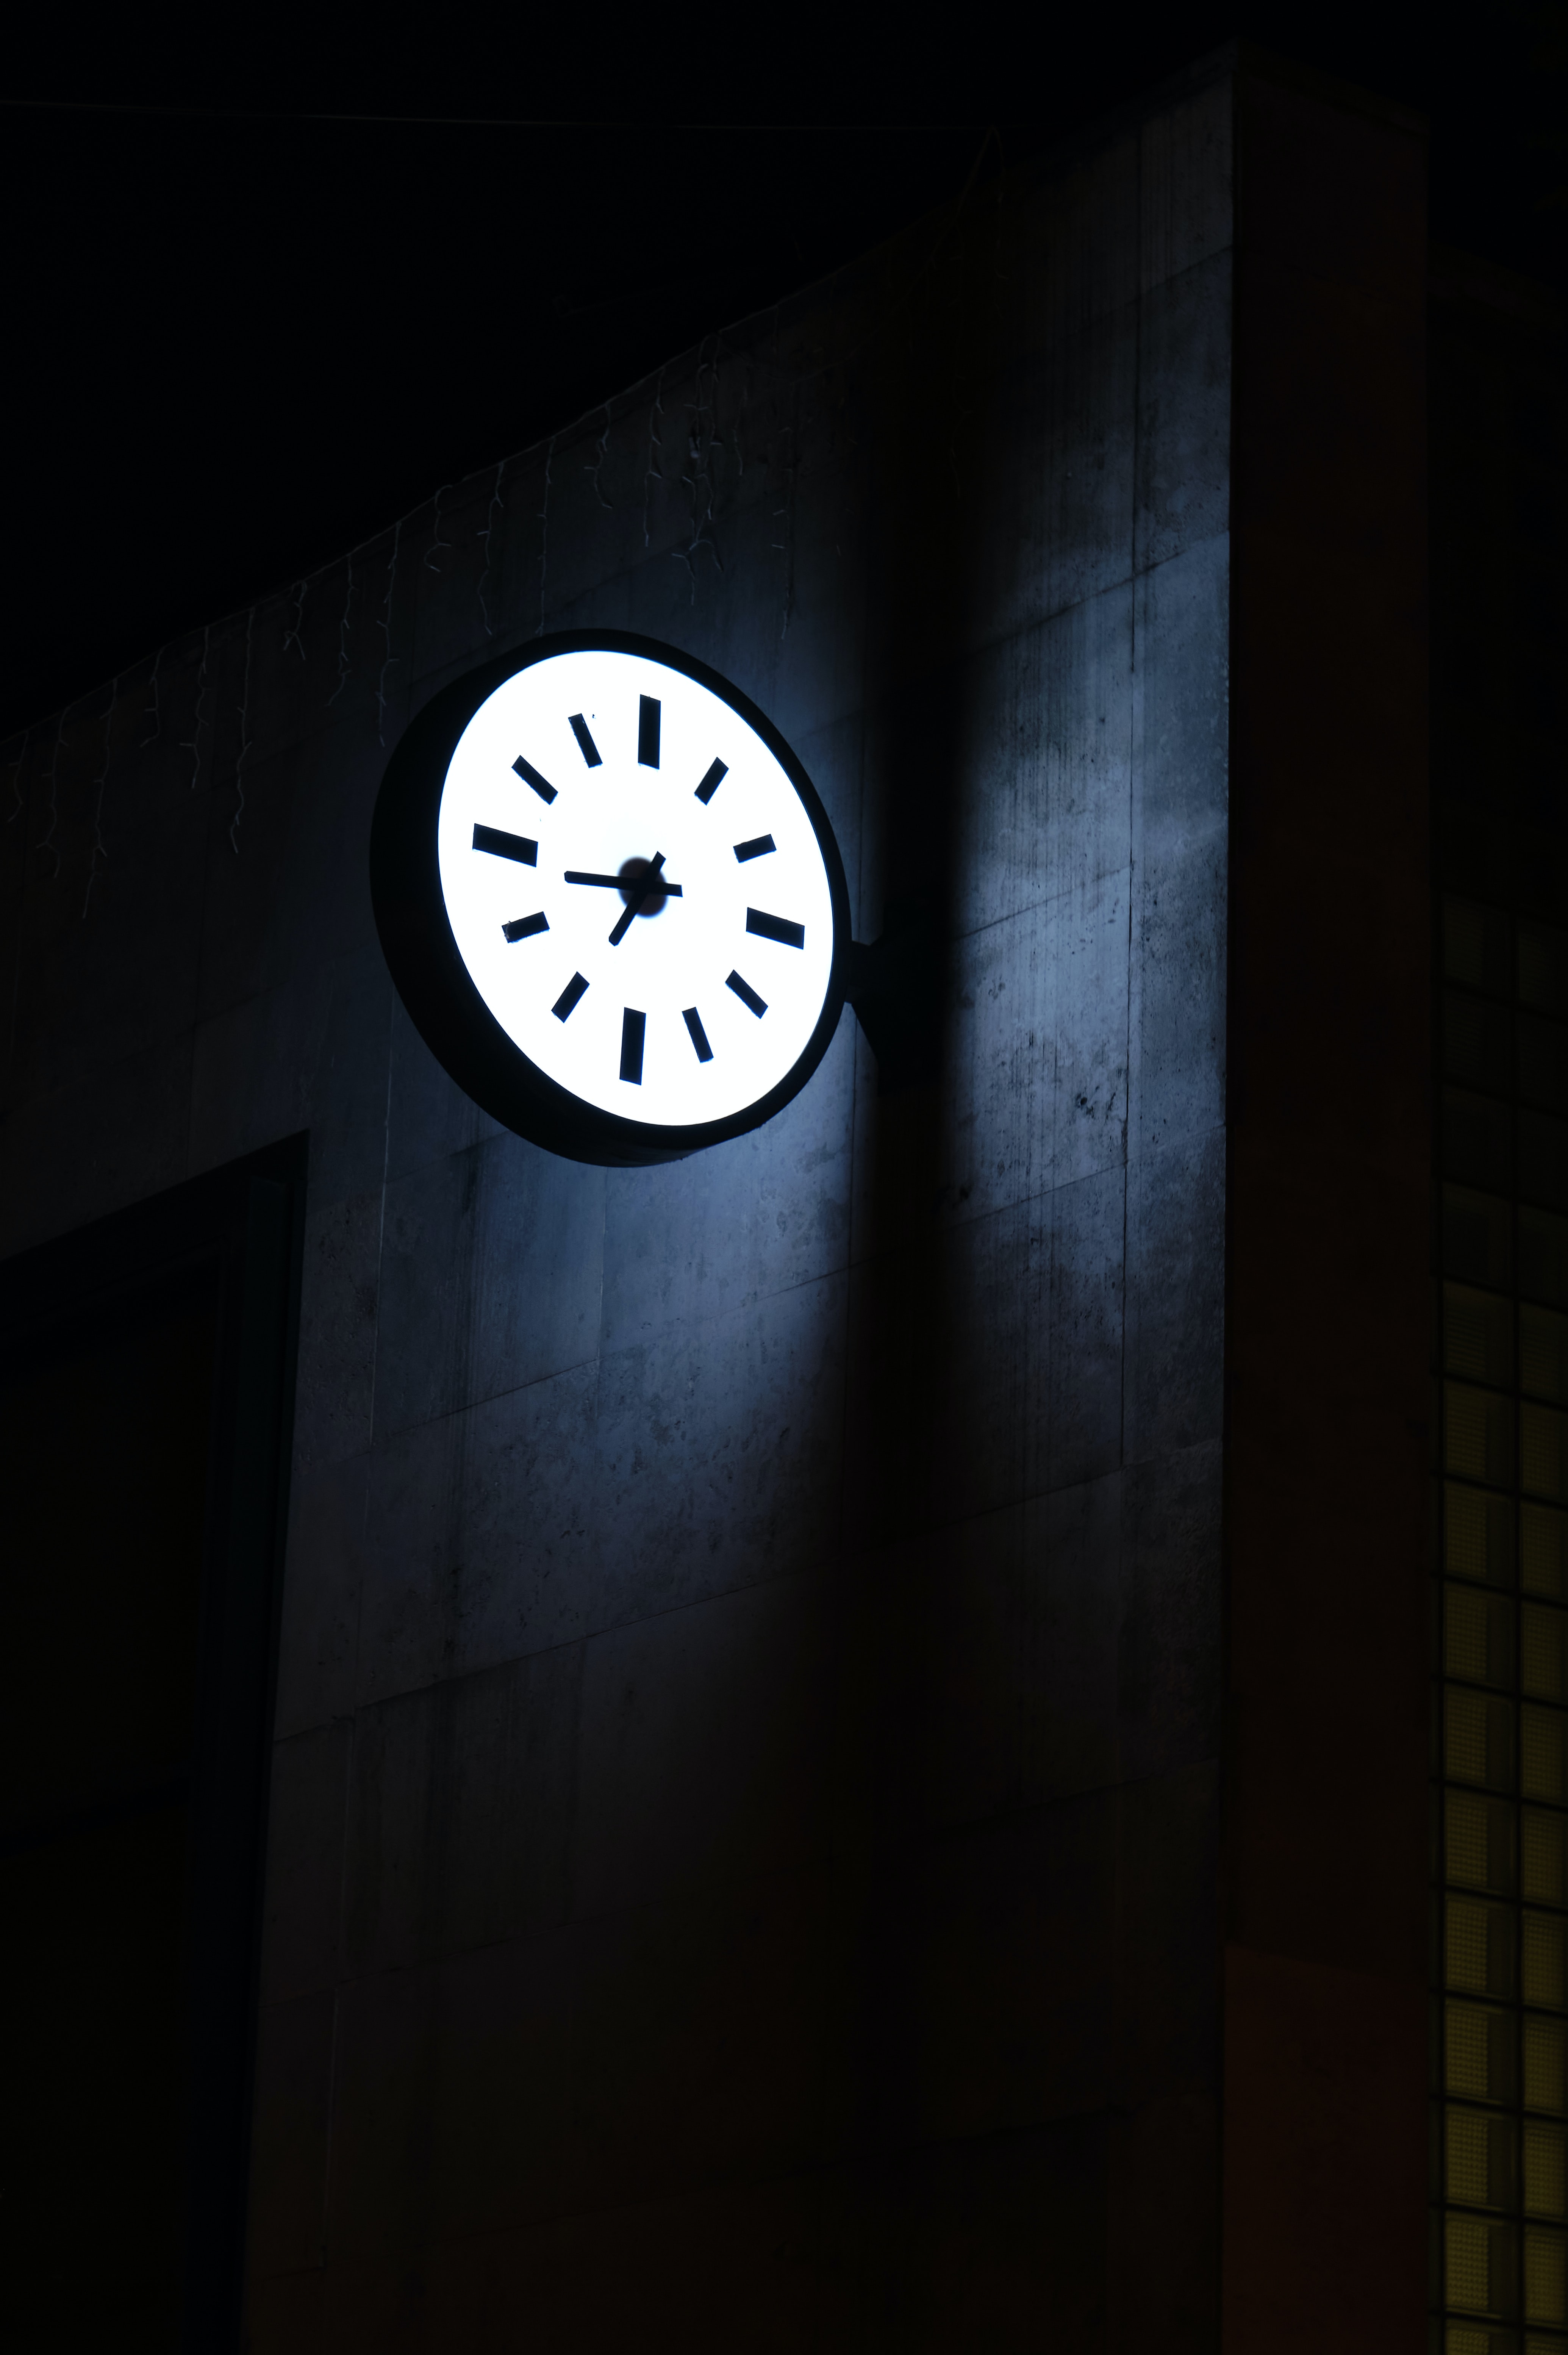 dark, clock face, clock, building, backlight, illumination, dial